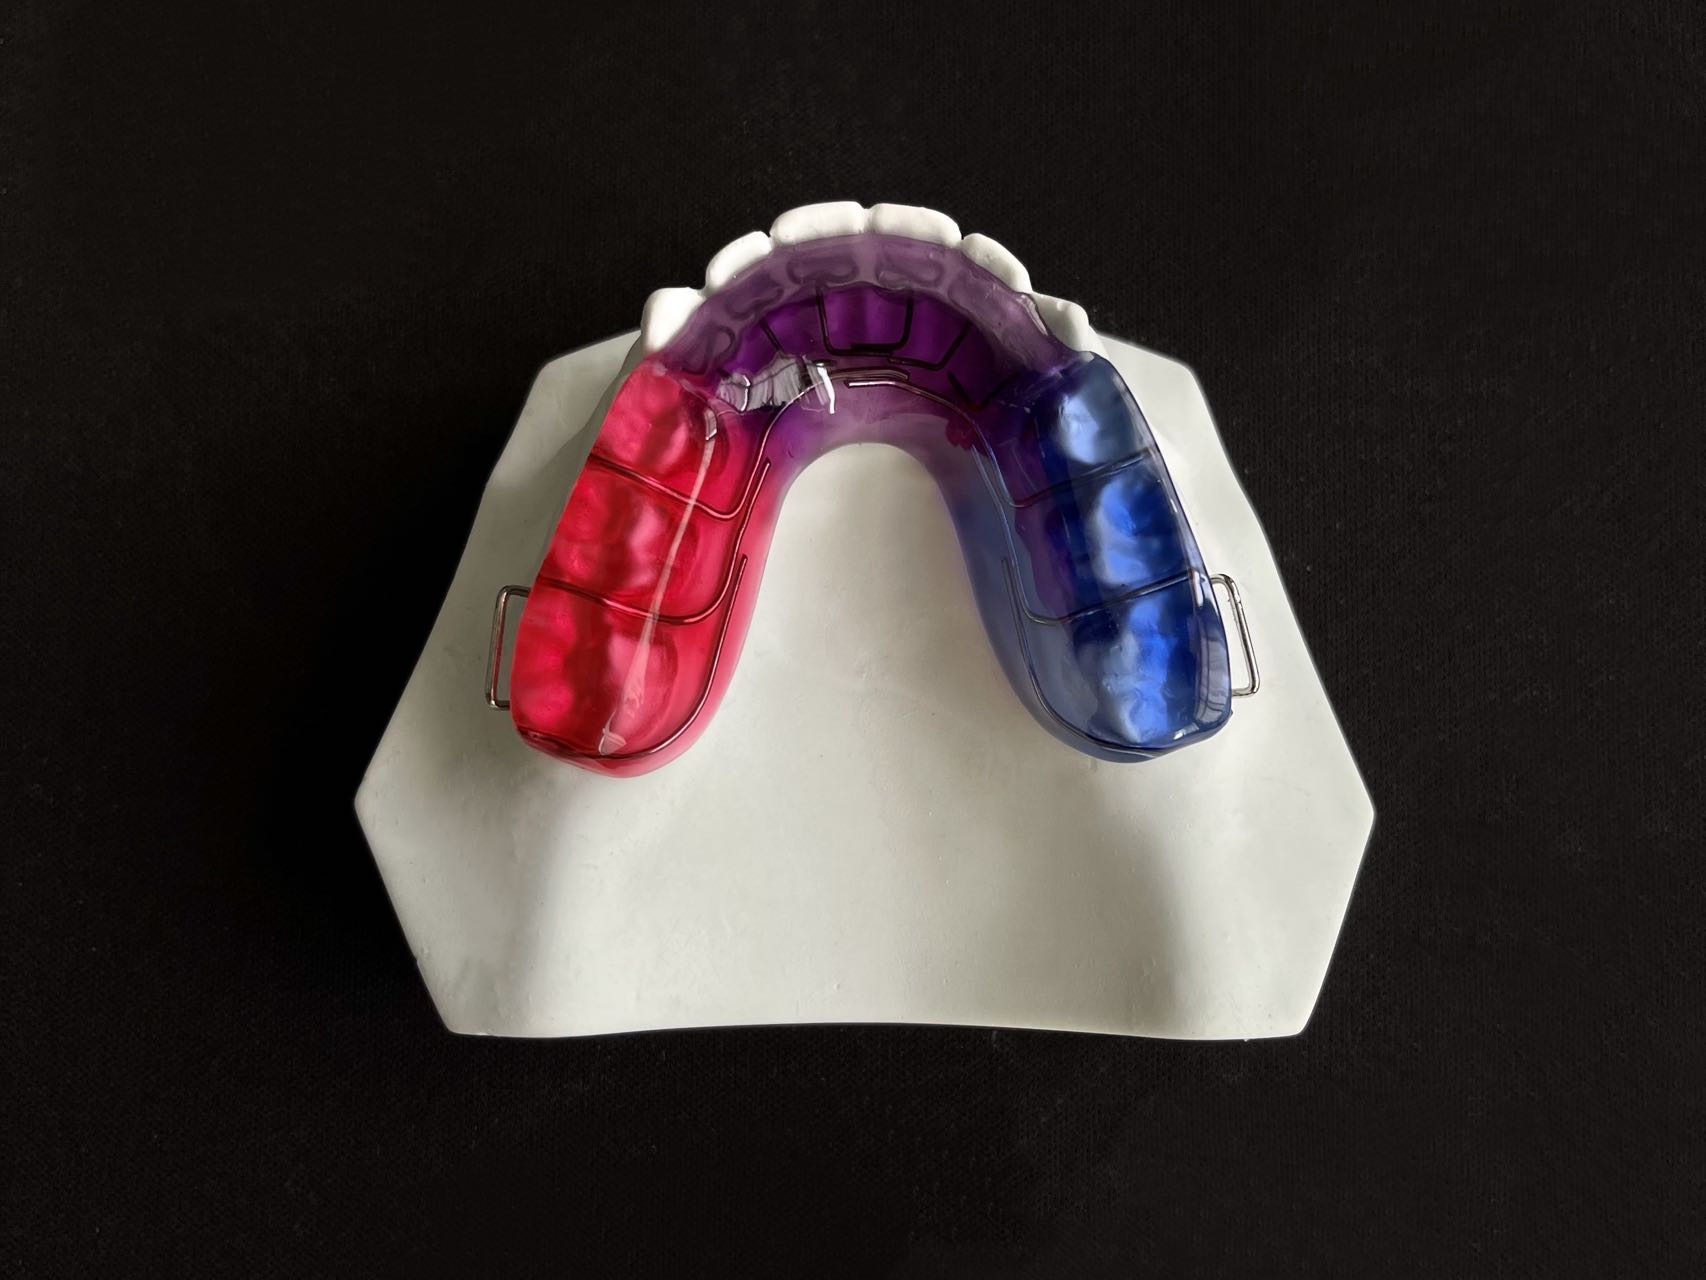 标准牙齿x光片,标准牙齿侧面光片,牙齿侧面光片_大山谷图库